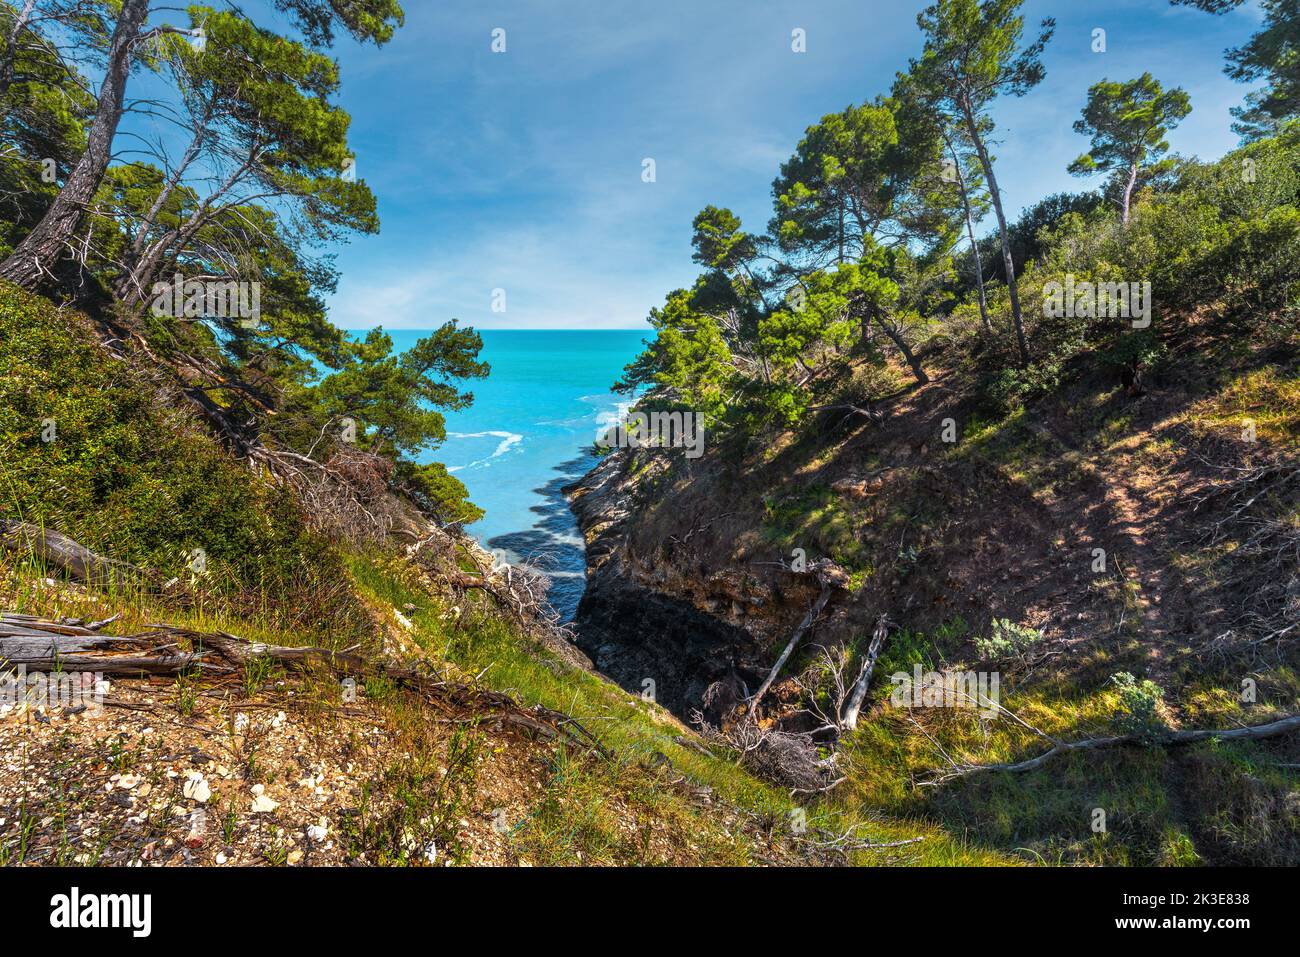 Forêt de pins près de la grotte brisée dans le parc national de Gargano. La mer des Pouilles est le fond. Vieste, province de Foggia, Puglia, Italie, Europe Banque D'Images